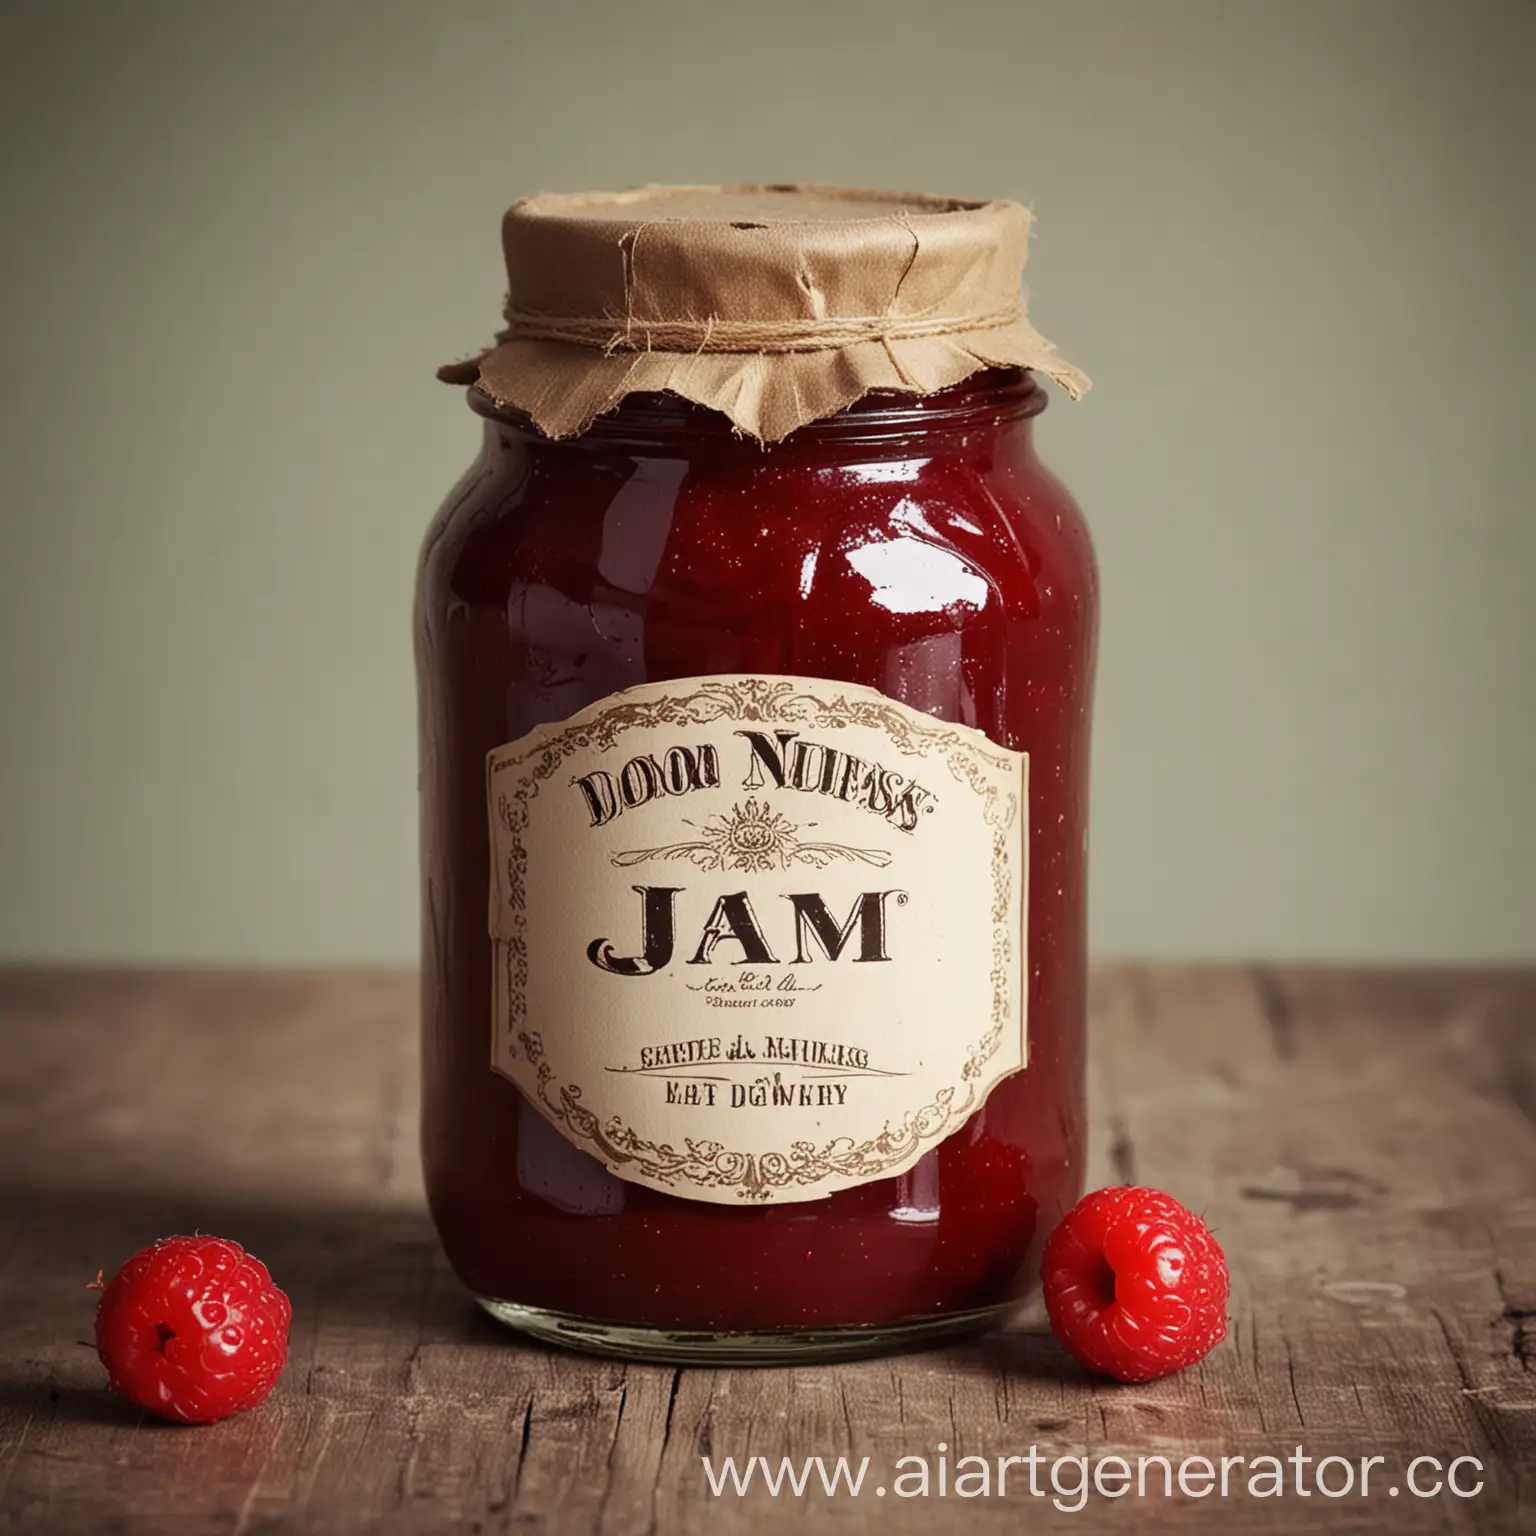 Jam bottle